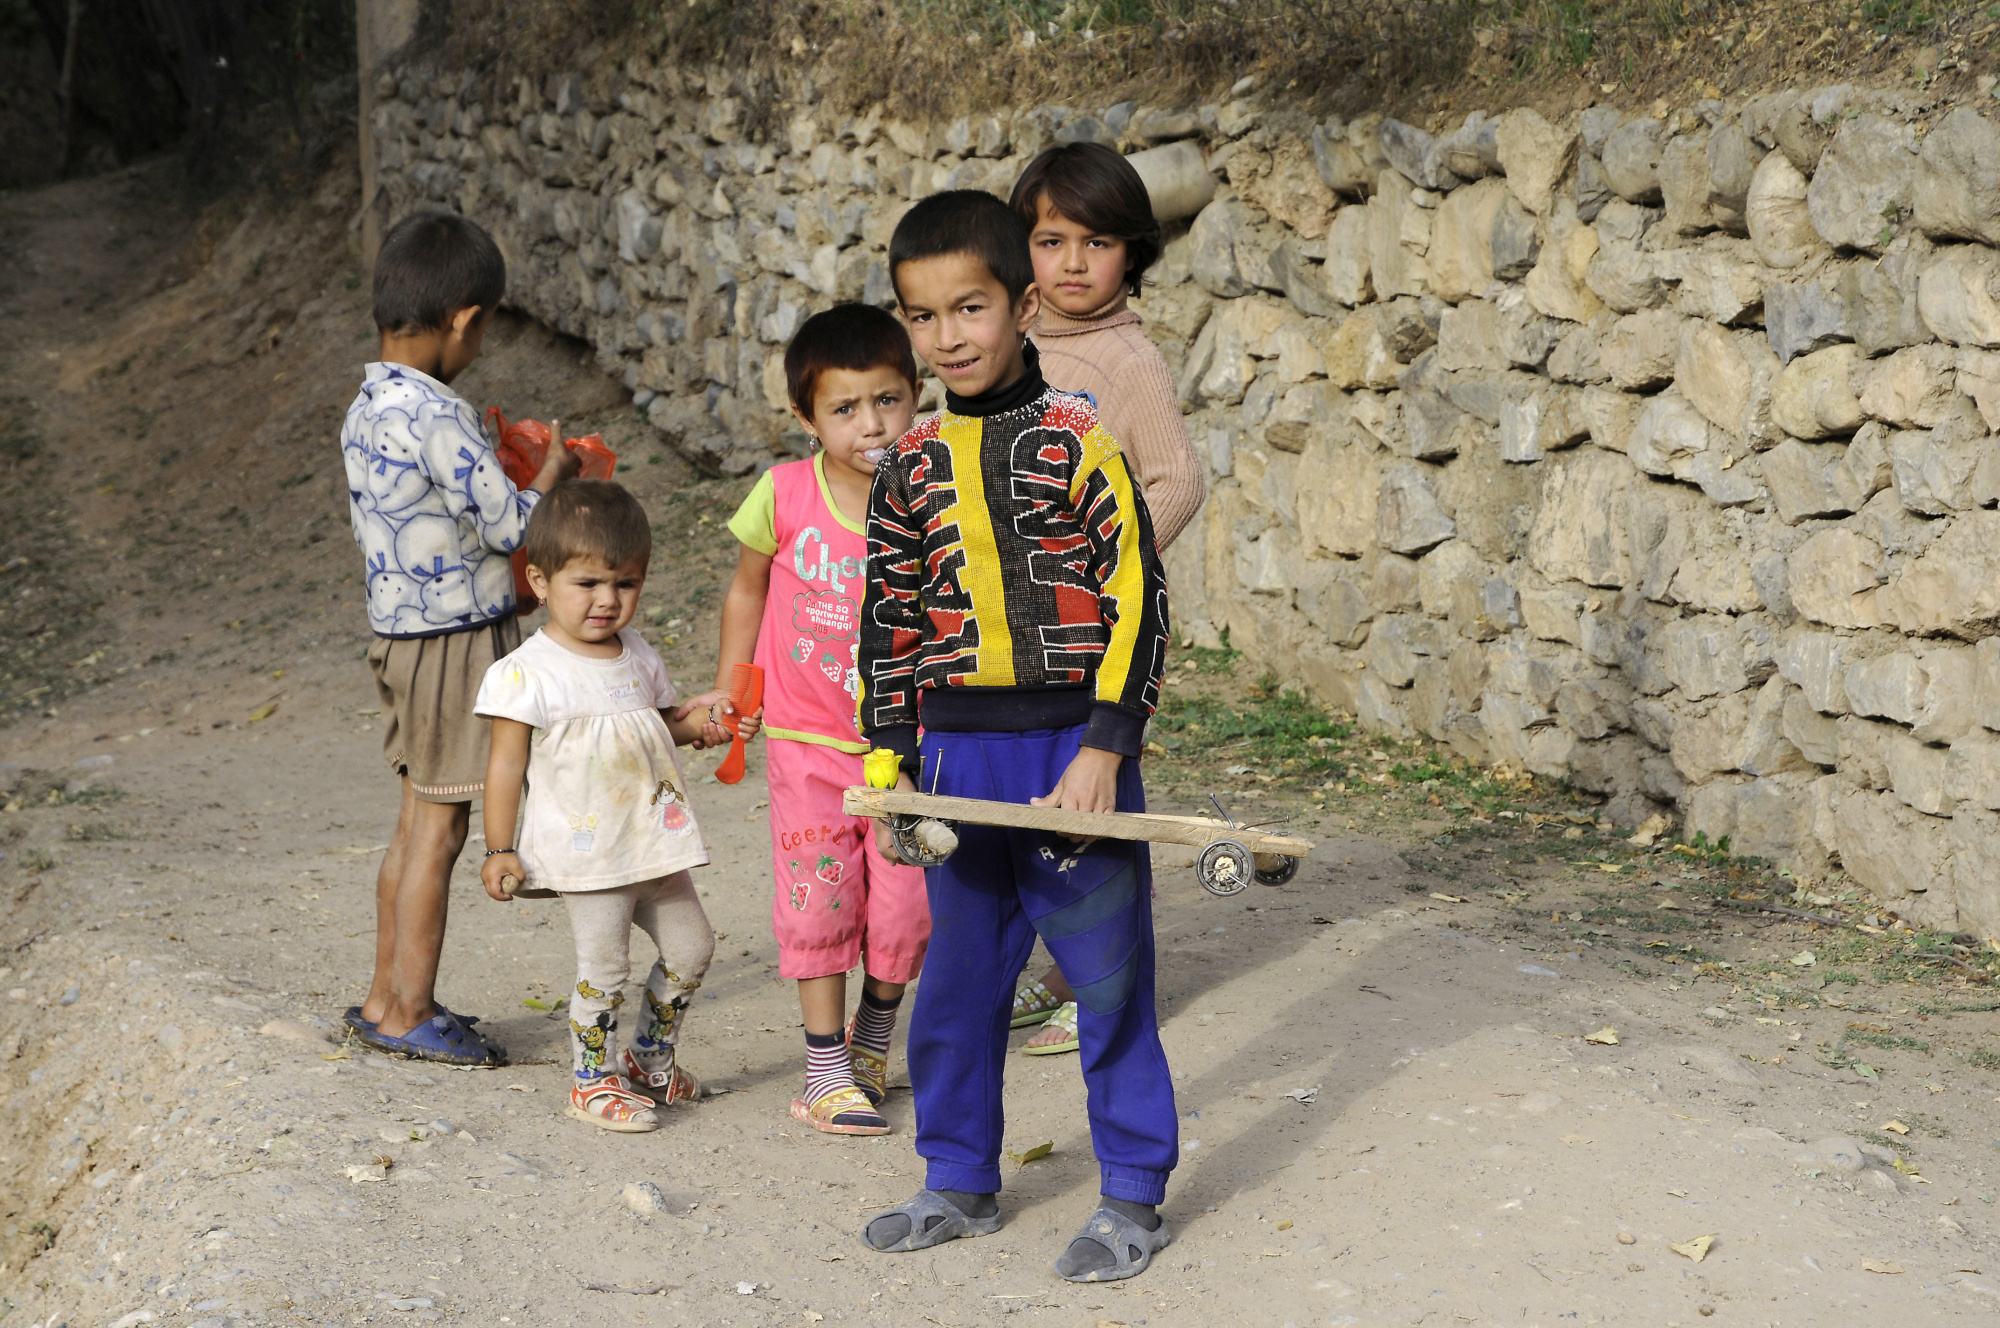 Дети в ауле. Дети таджики. Воспитание детей в Таджикистане. Жизнь детей в Таджикистане. Дети из Таджикистана Чамбул.